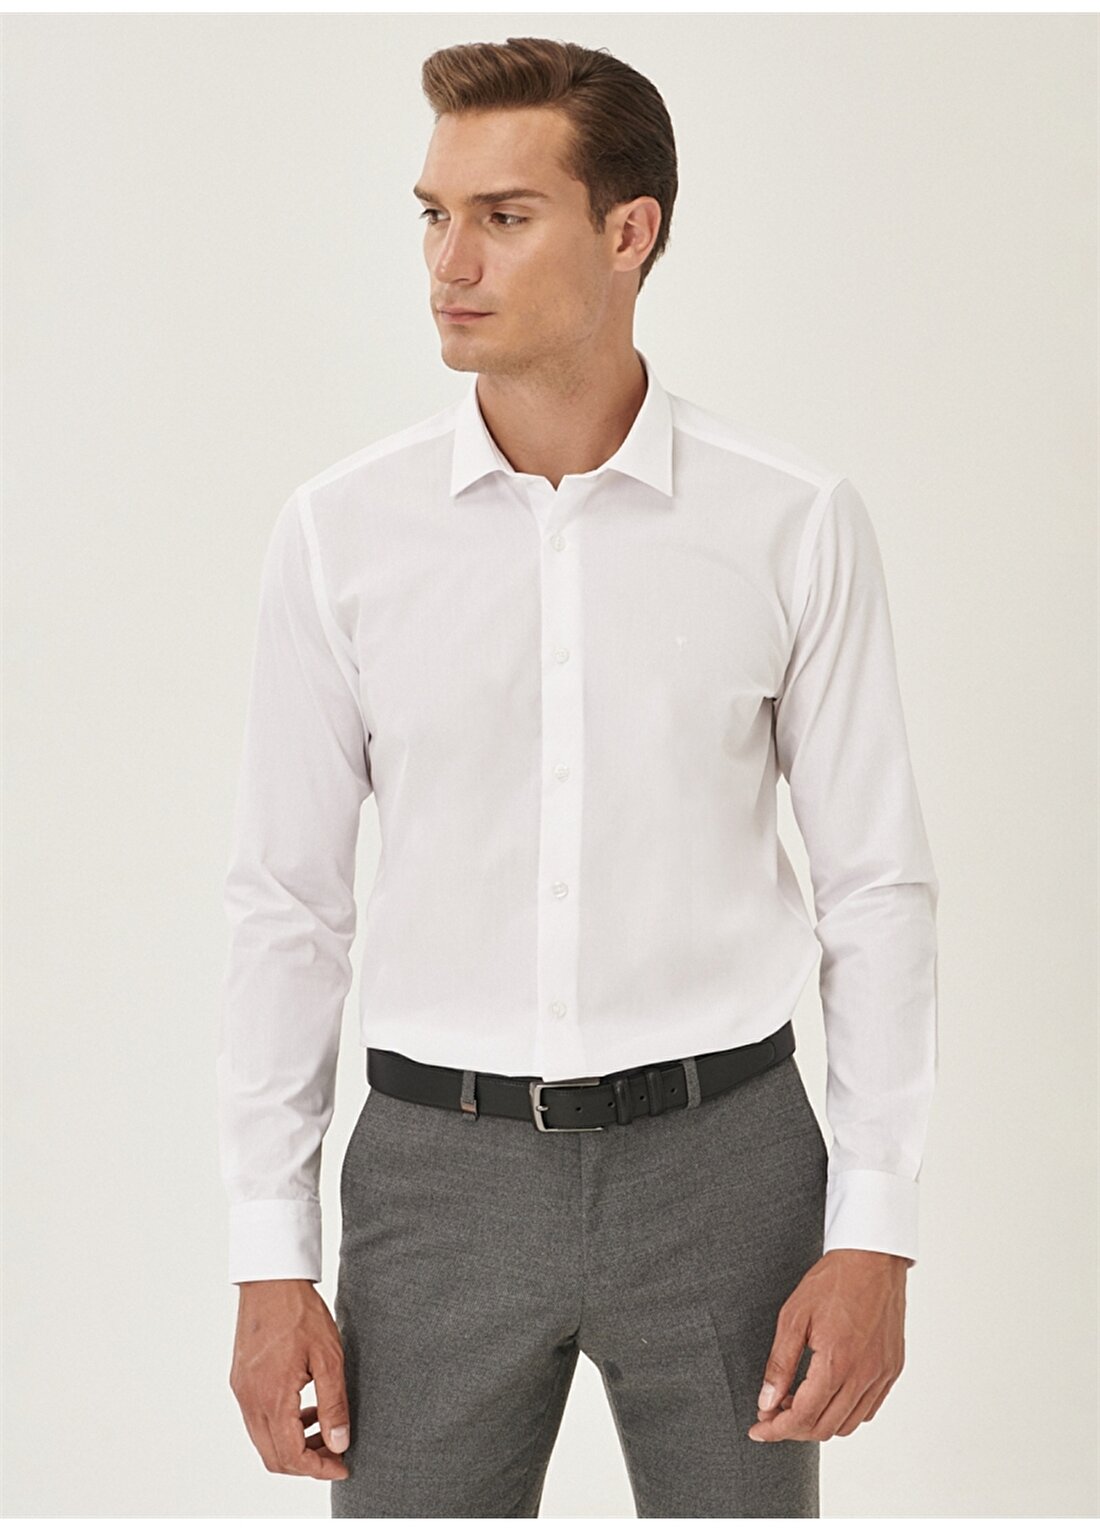 Altınyıldız Classics Slim Fit Klasik Gömlek Yaka Düz Beyaz Erkek Gömlek 4A2000000001